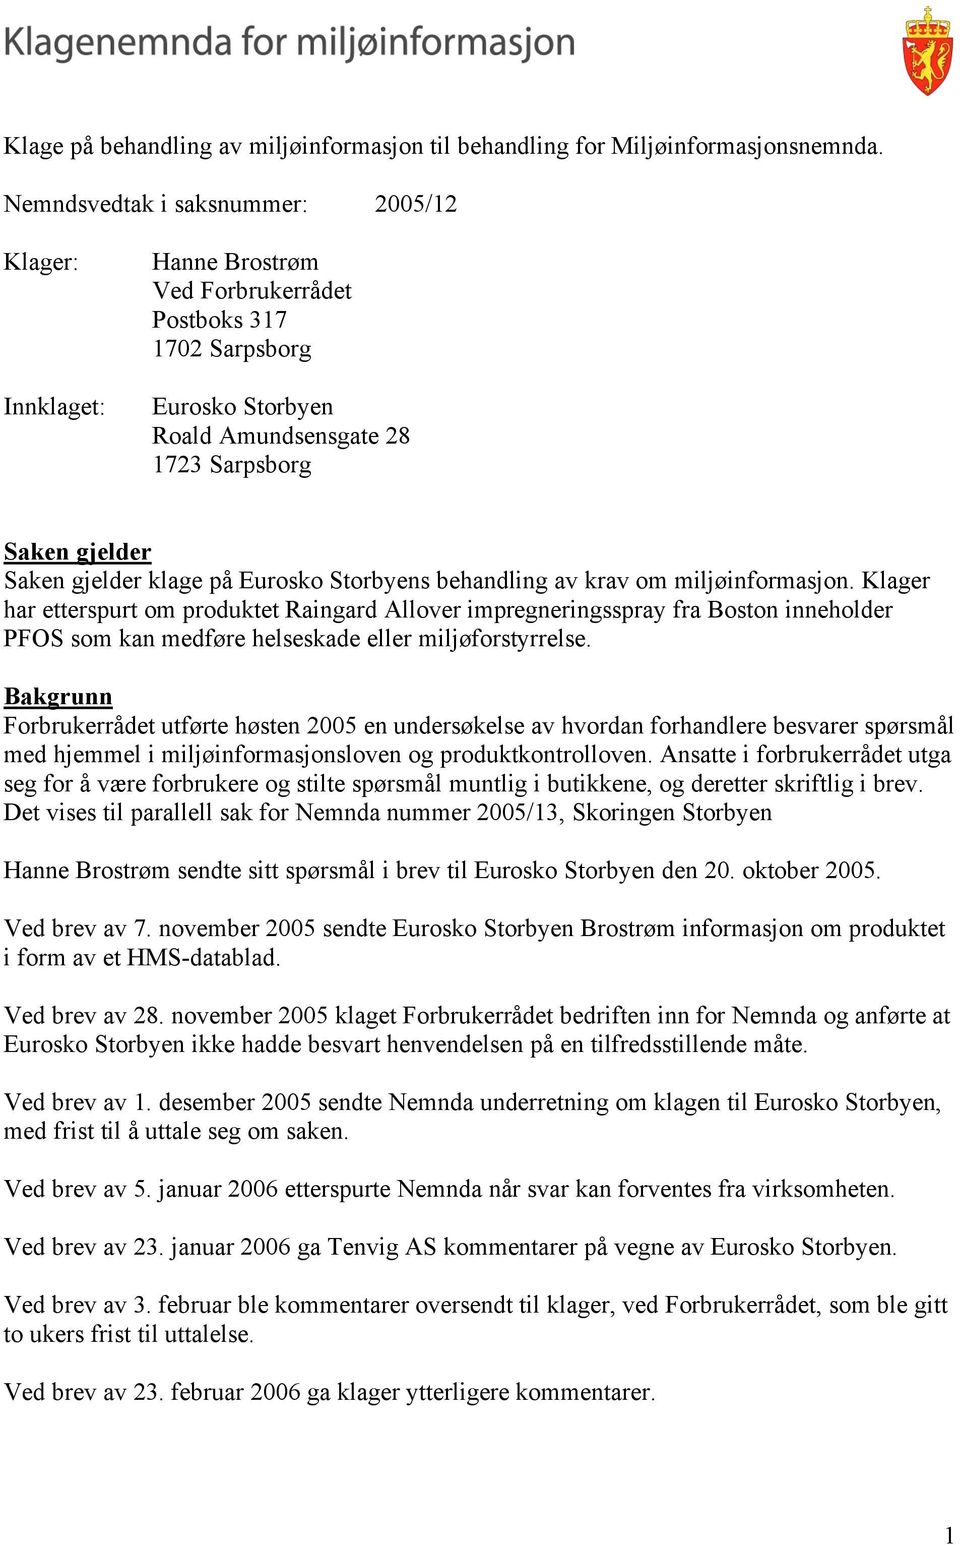 klage på Eurosko Storbyens behandling av krav om miljøinformasjon.